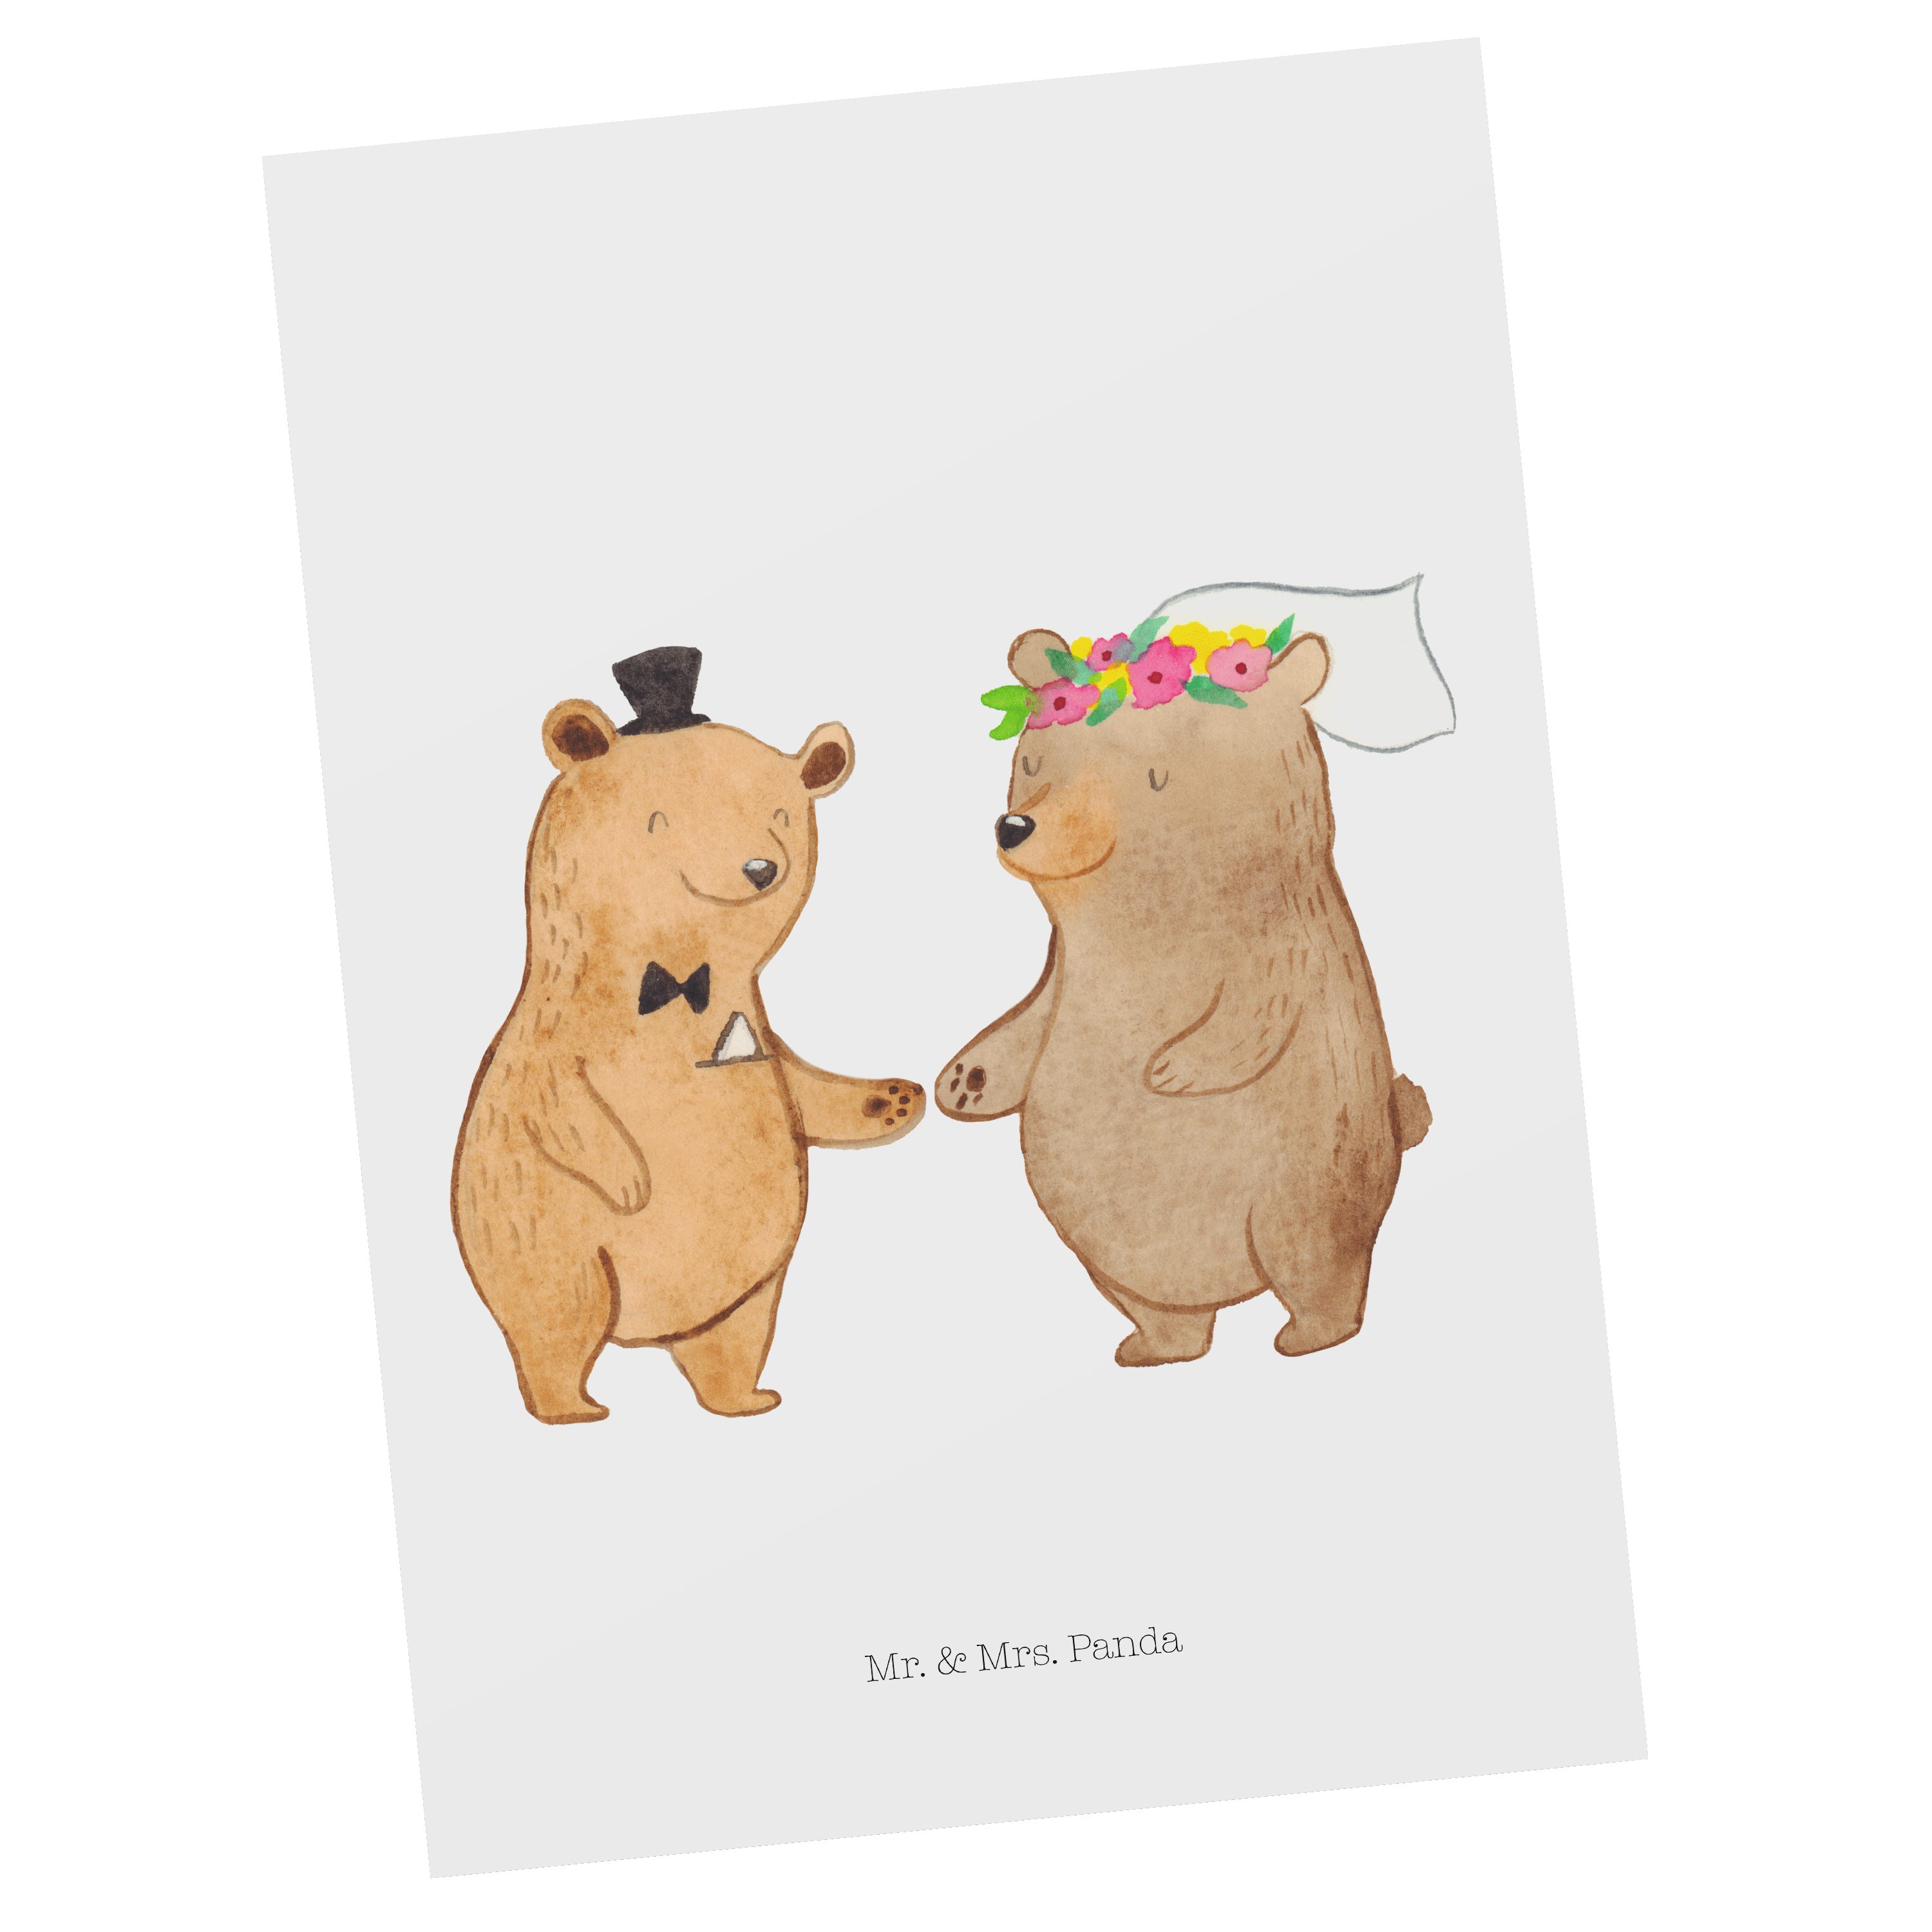 Mr. & Mrs. Panda Postkarte Bären Heirat - Weiß - Geschenk, Karte, Hochzeitsgeschenk, Hochzeit, G